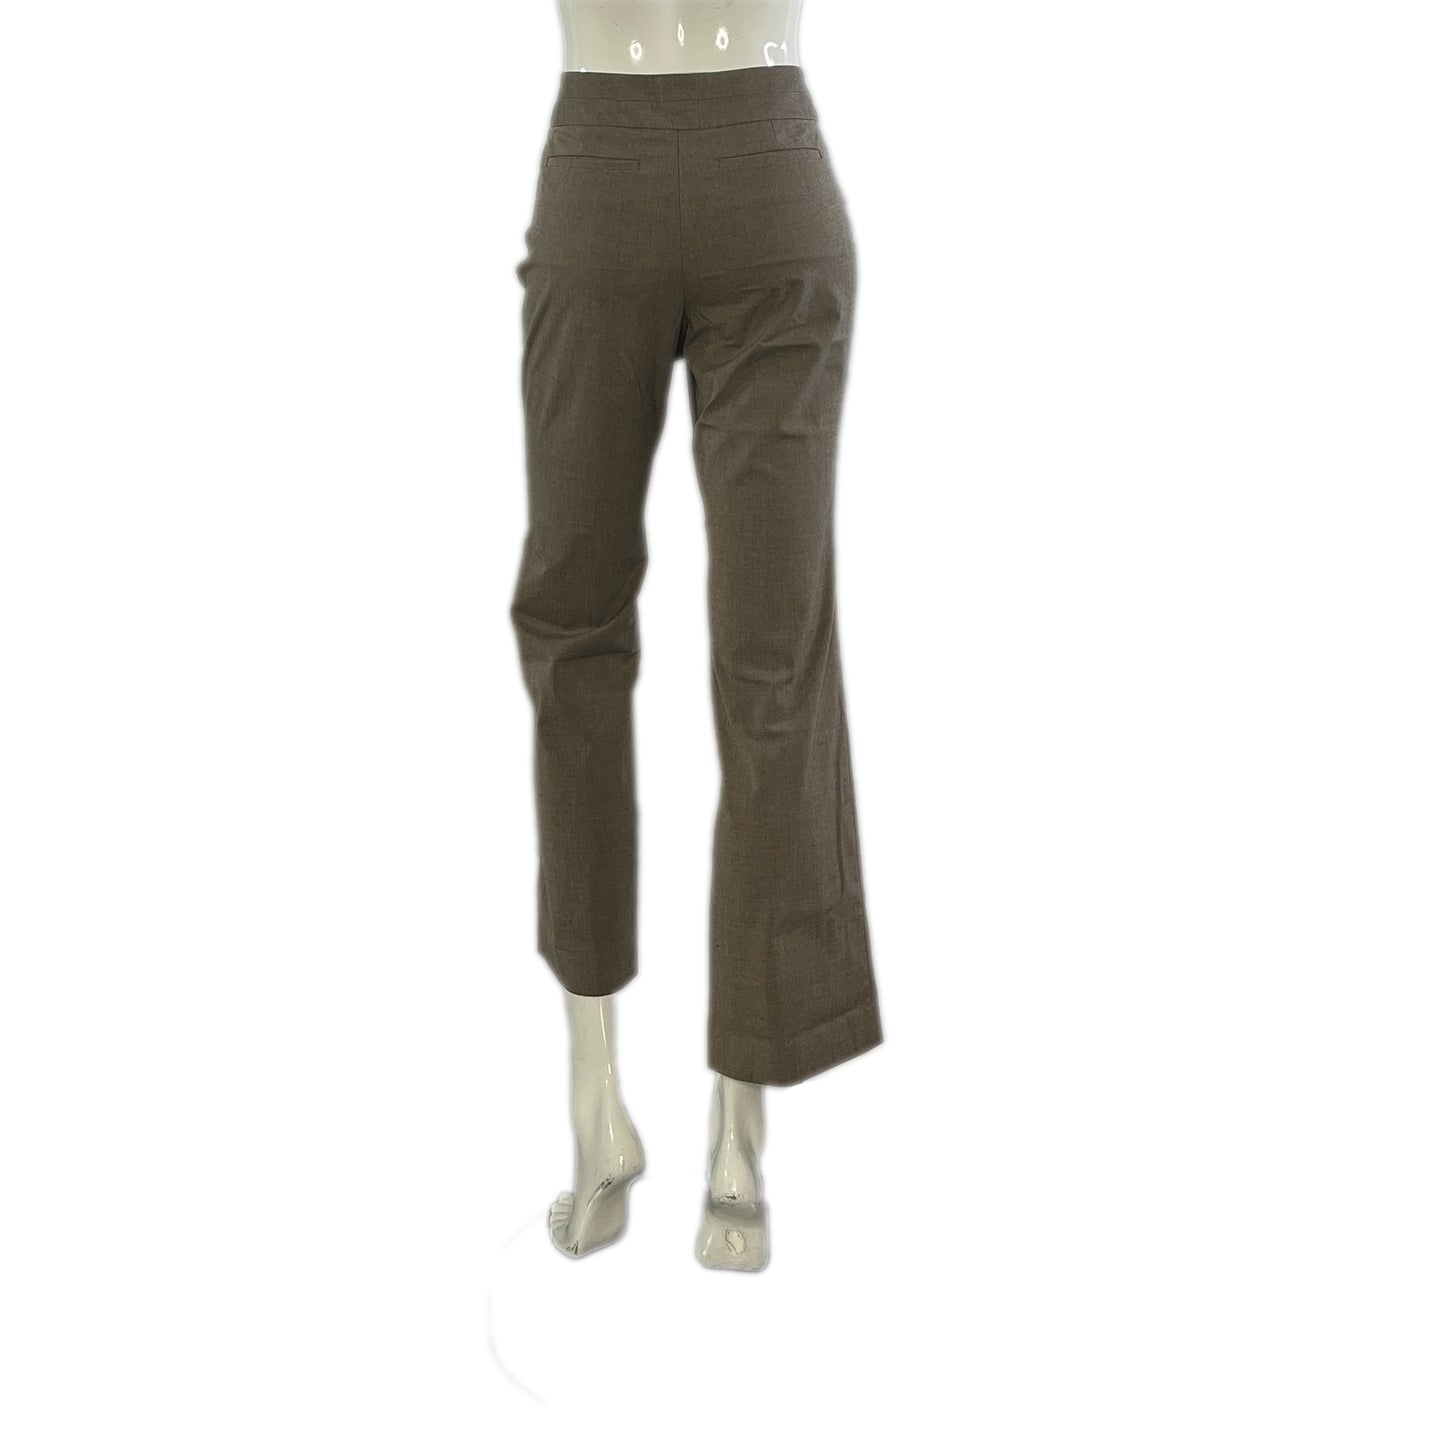 Ann Taylor Dress Pants Light Brown Size 6P SKU 000296-13